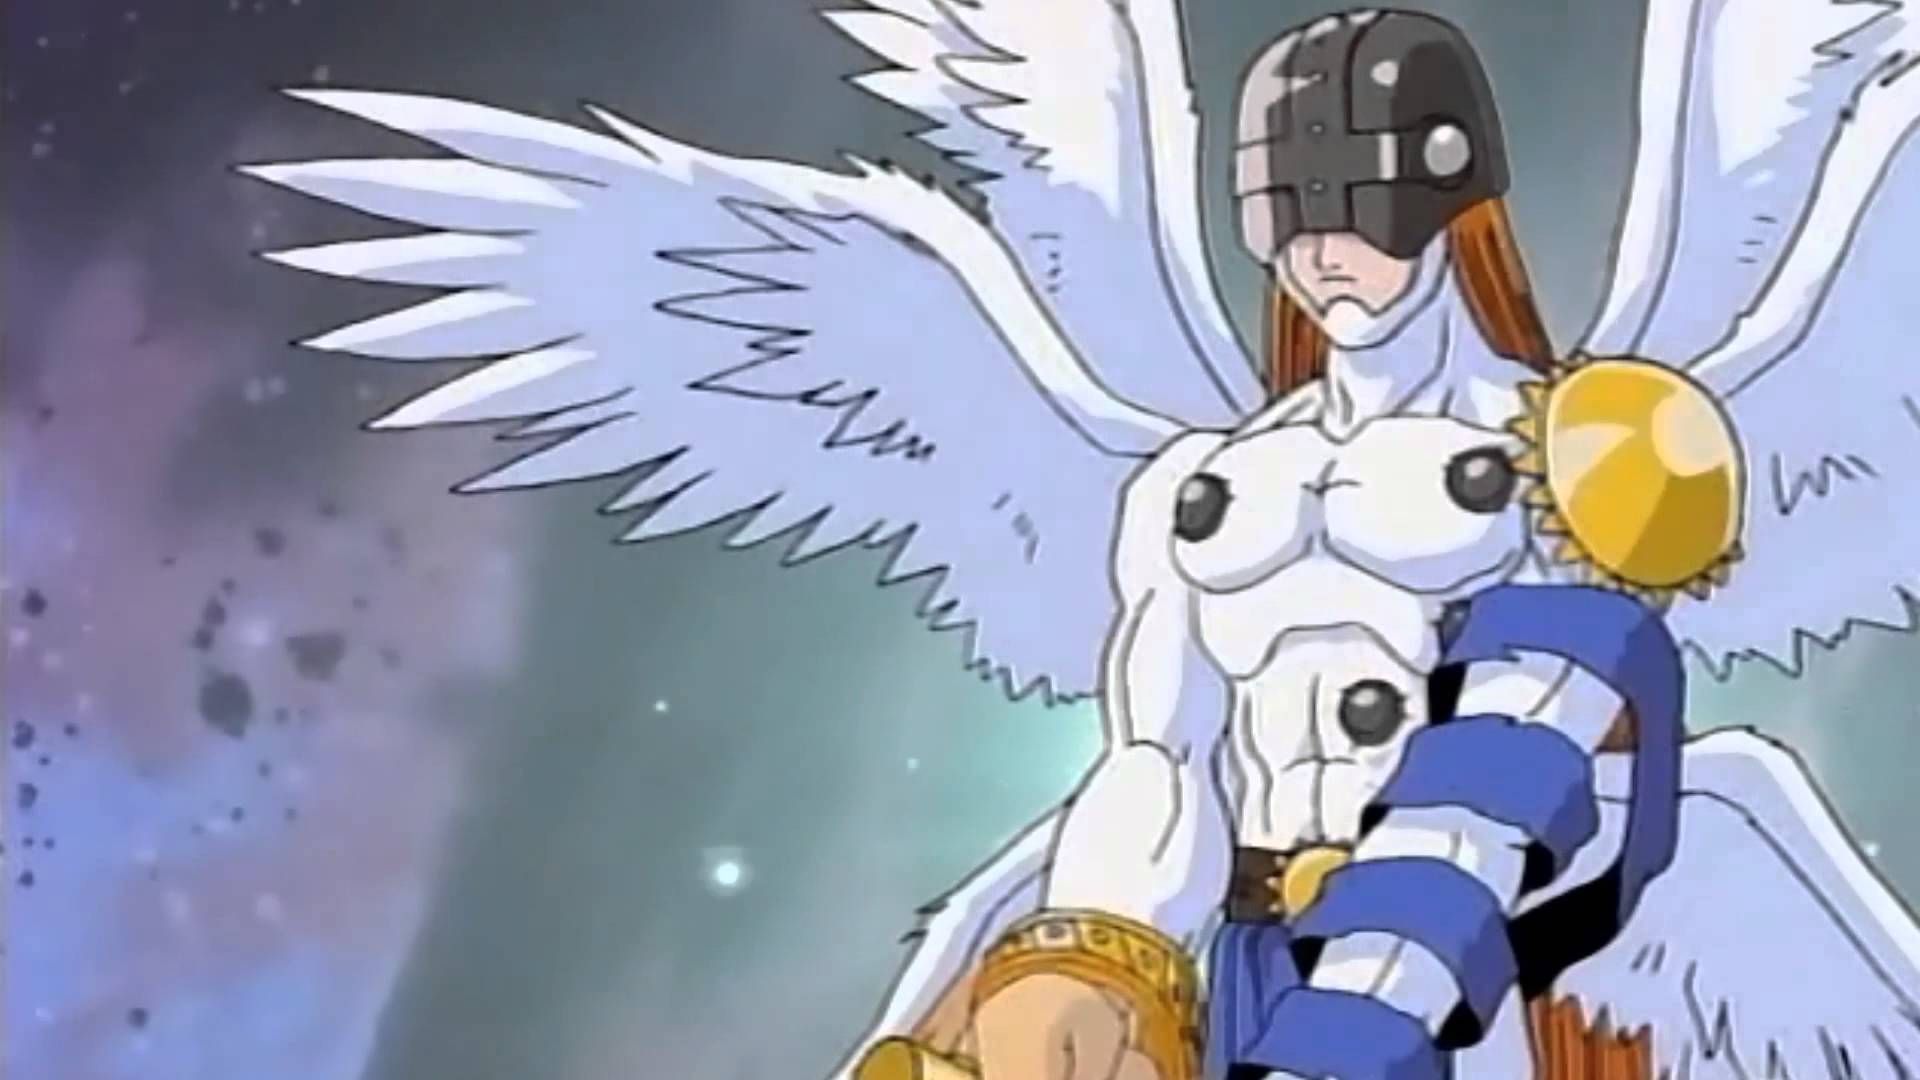 Digimon kazemon porn